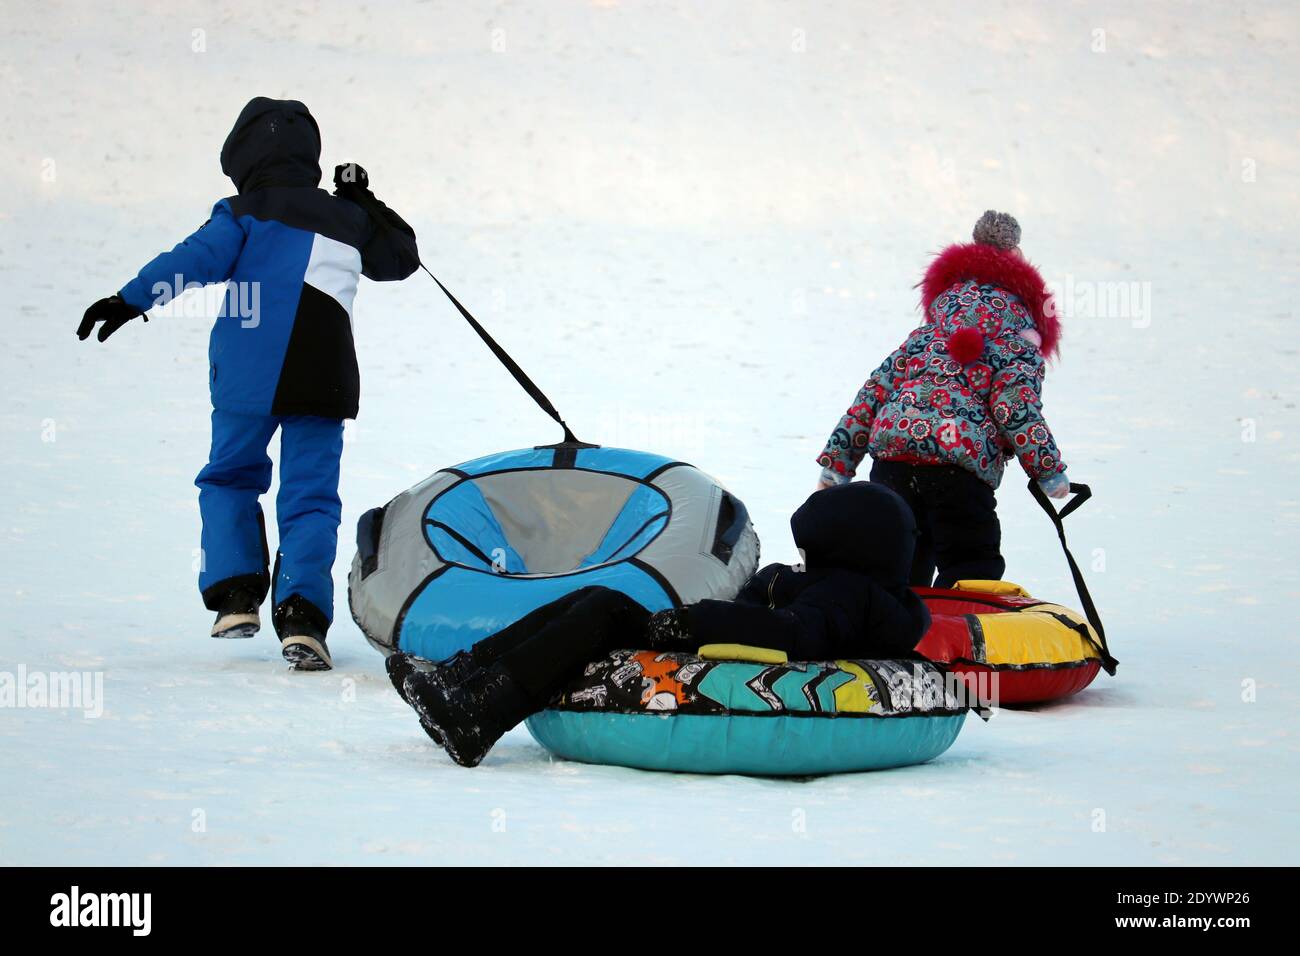 Les enfants s'amusent sur les tubes de neige. Les enfants font du tubing, des animations hivernales Banque D'Images